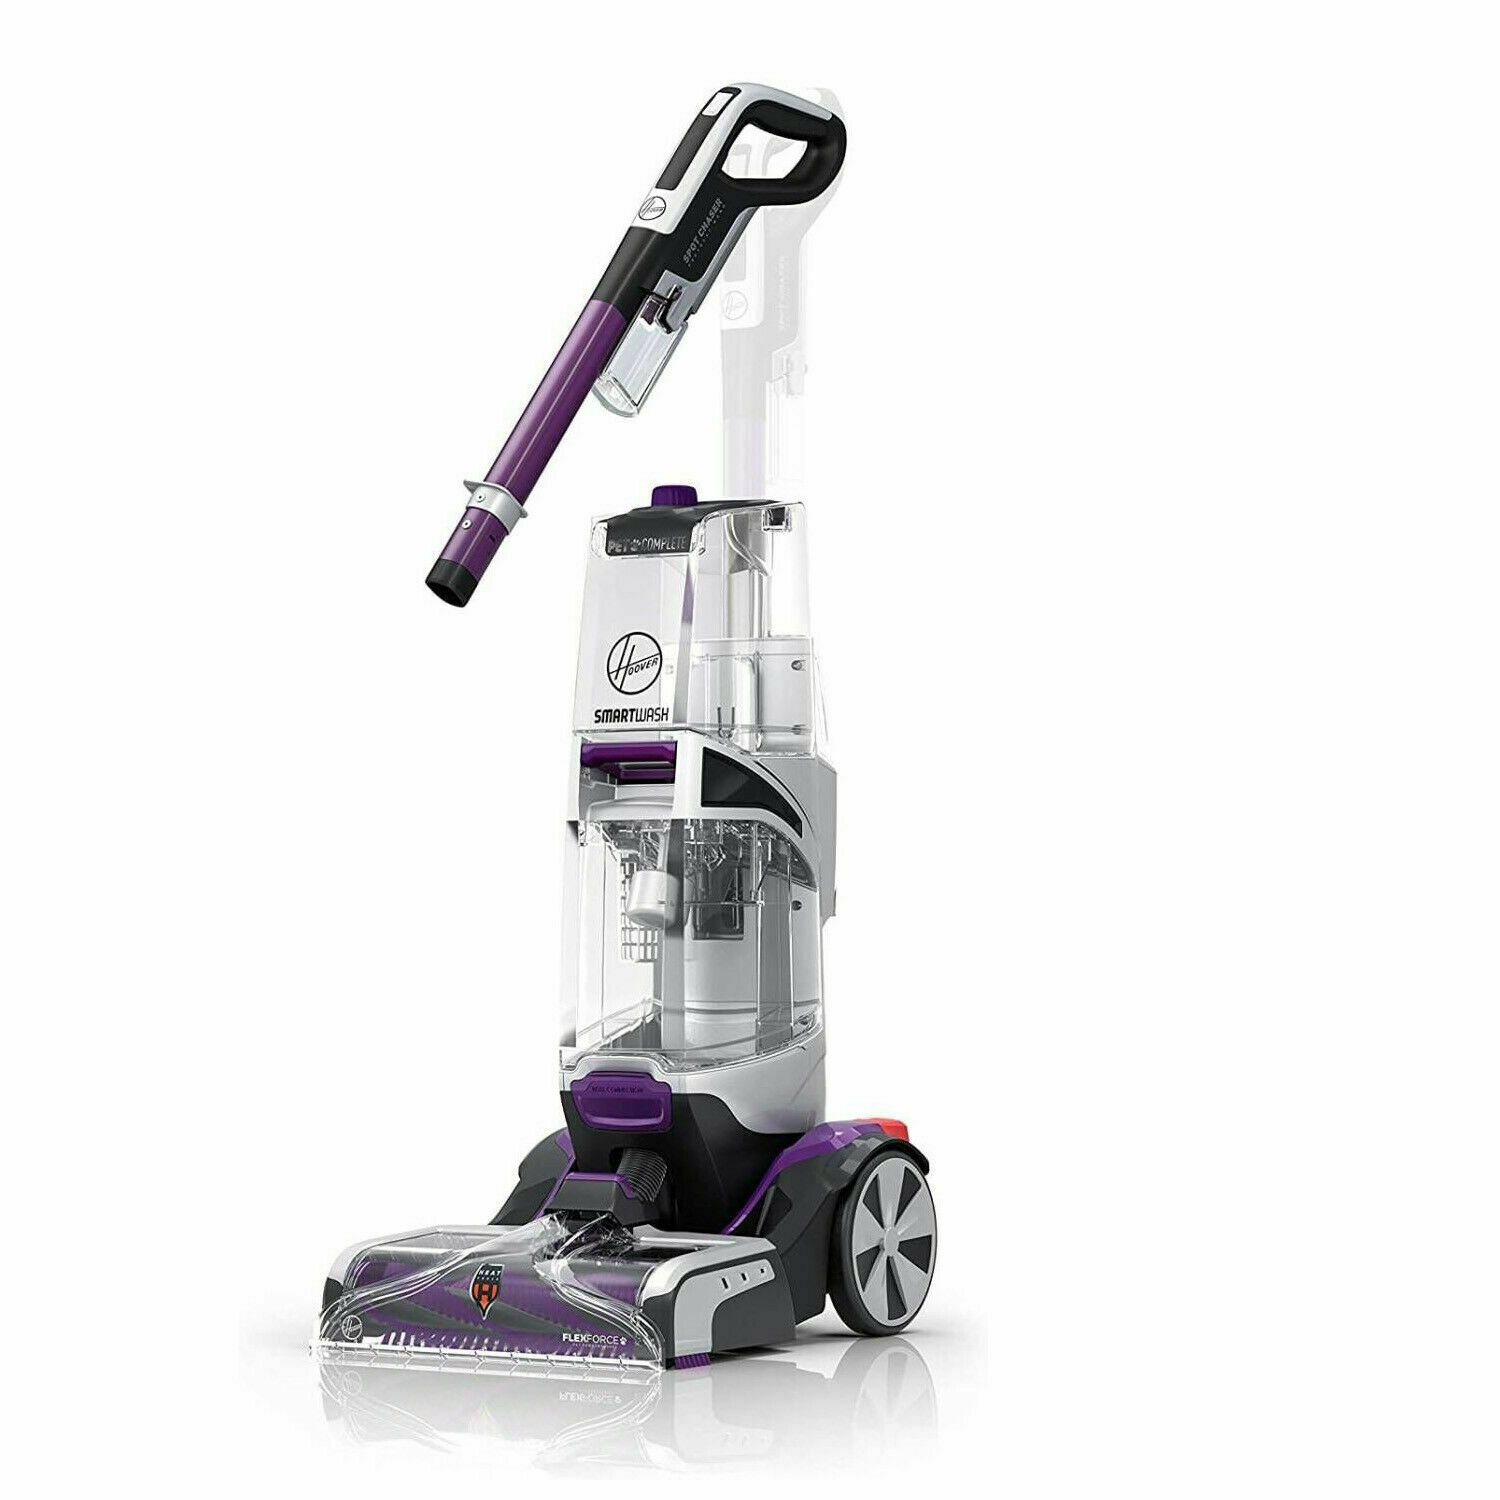 Hoover SmartWash Plus Automatic Carpet Cleaner Machine FH53010 Blue/Purple